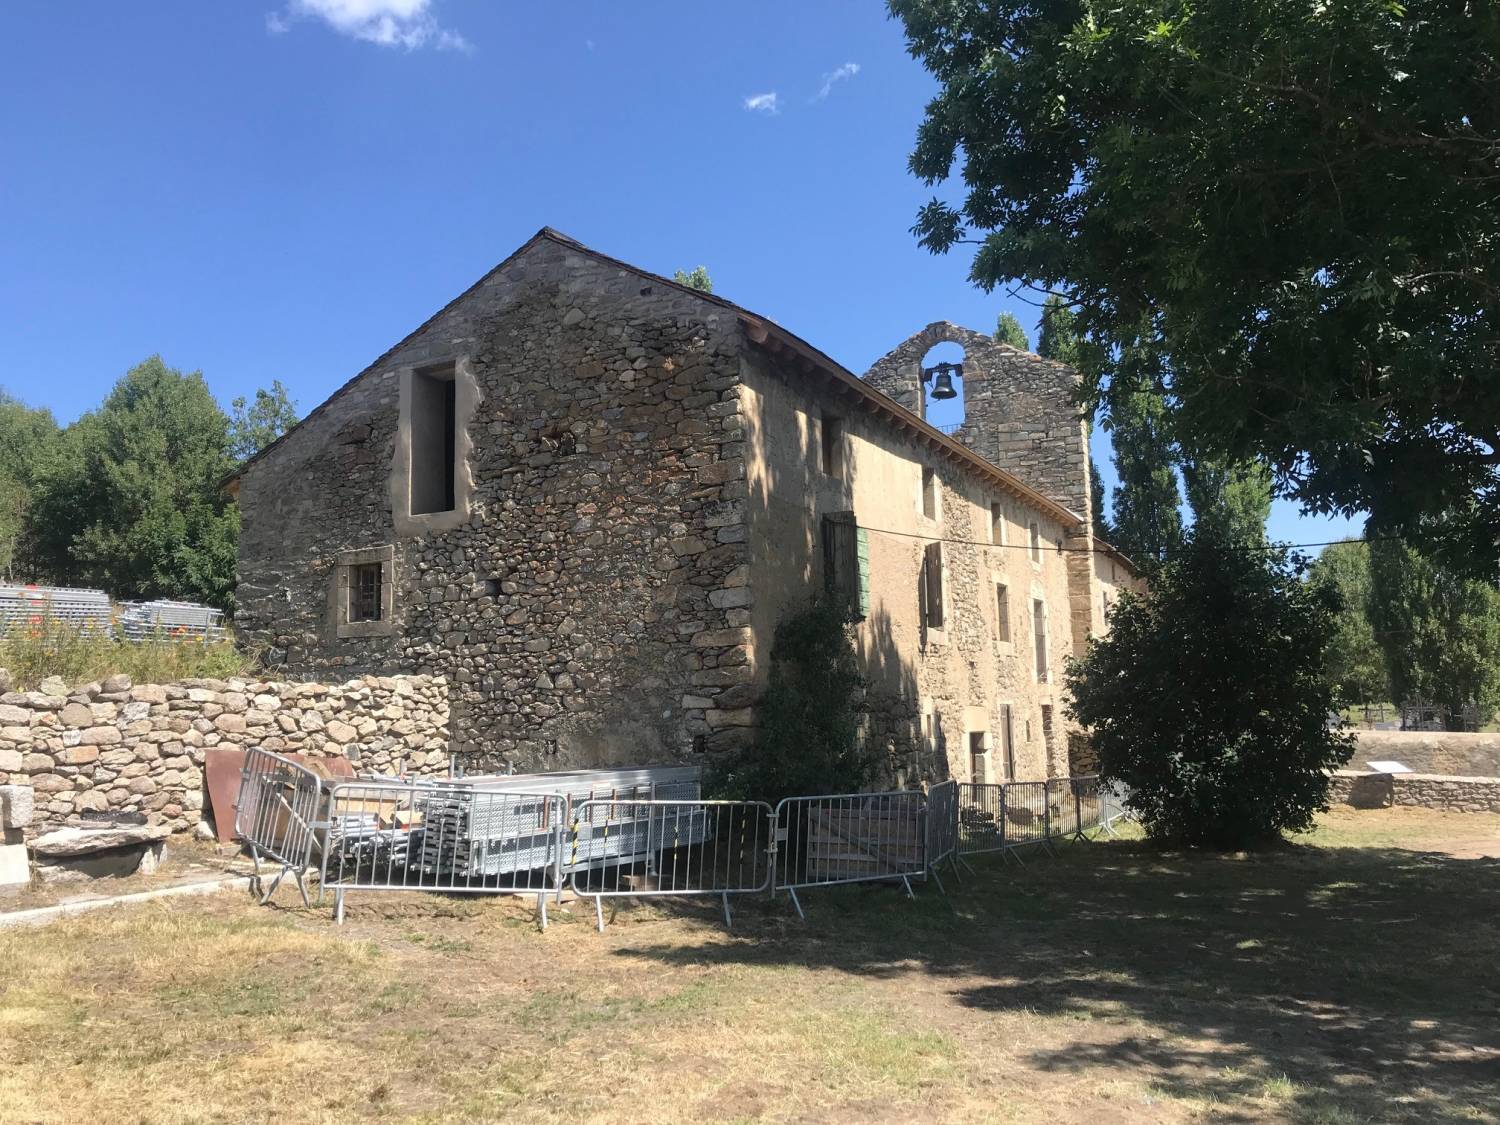 Font-Romeu-Odeillo-Via (66) Chapelle Sainte-Colombe de Via et son presbytère - Sauvegarde de l'Art Français